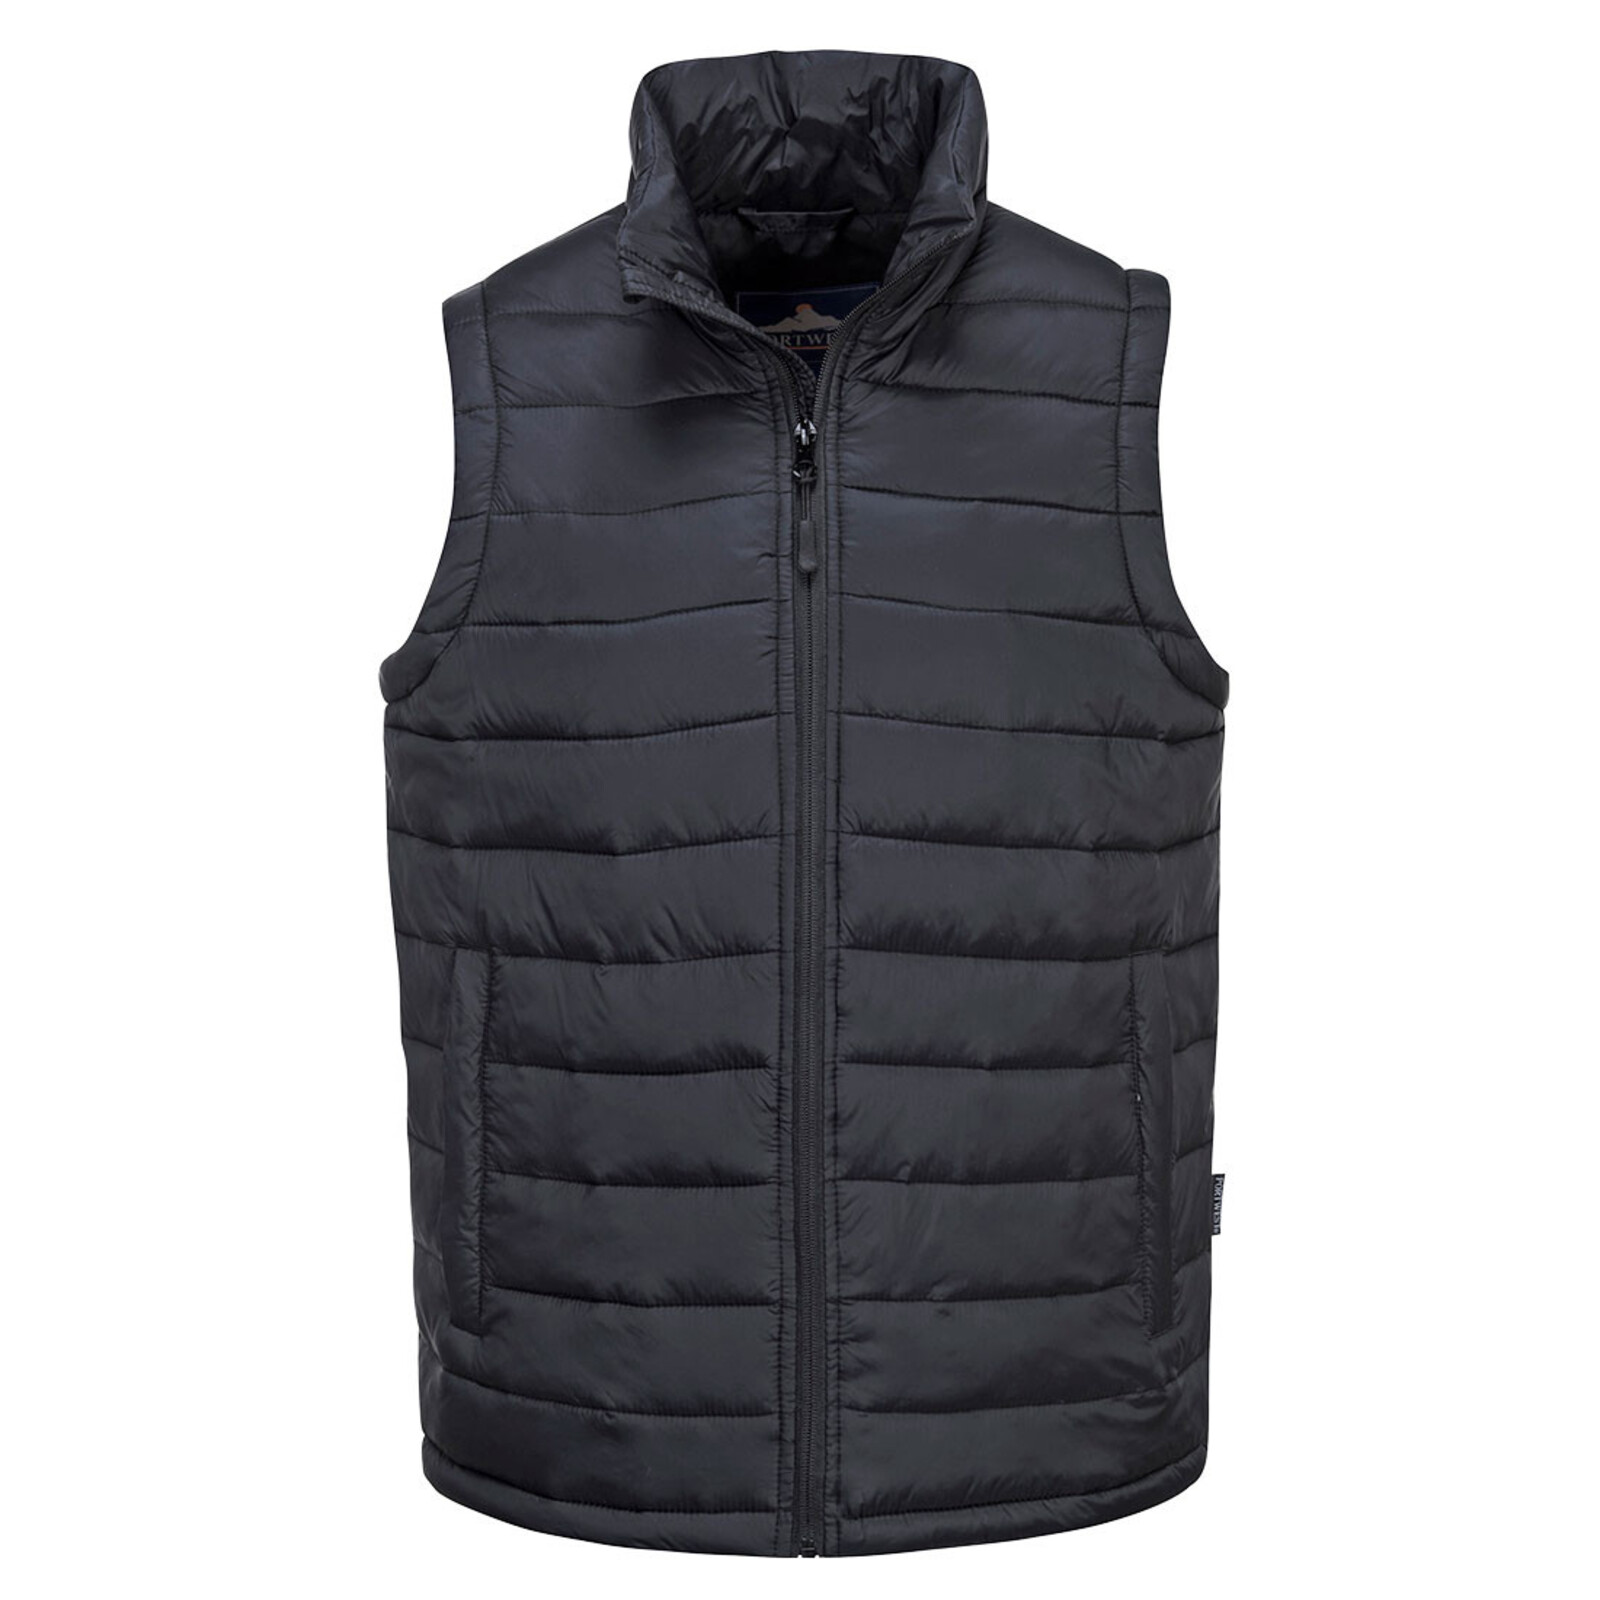 Pánska zateplená termo vesta Portwest Aspen S544 - veľkosť: L, farba: čierna